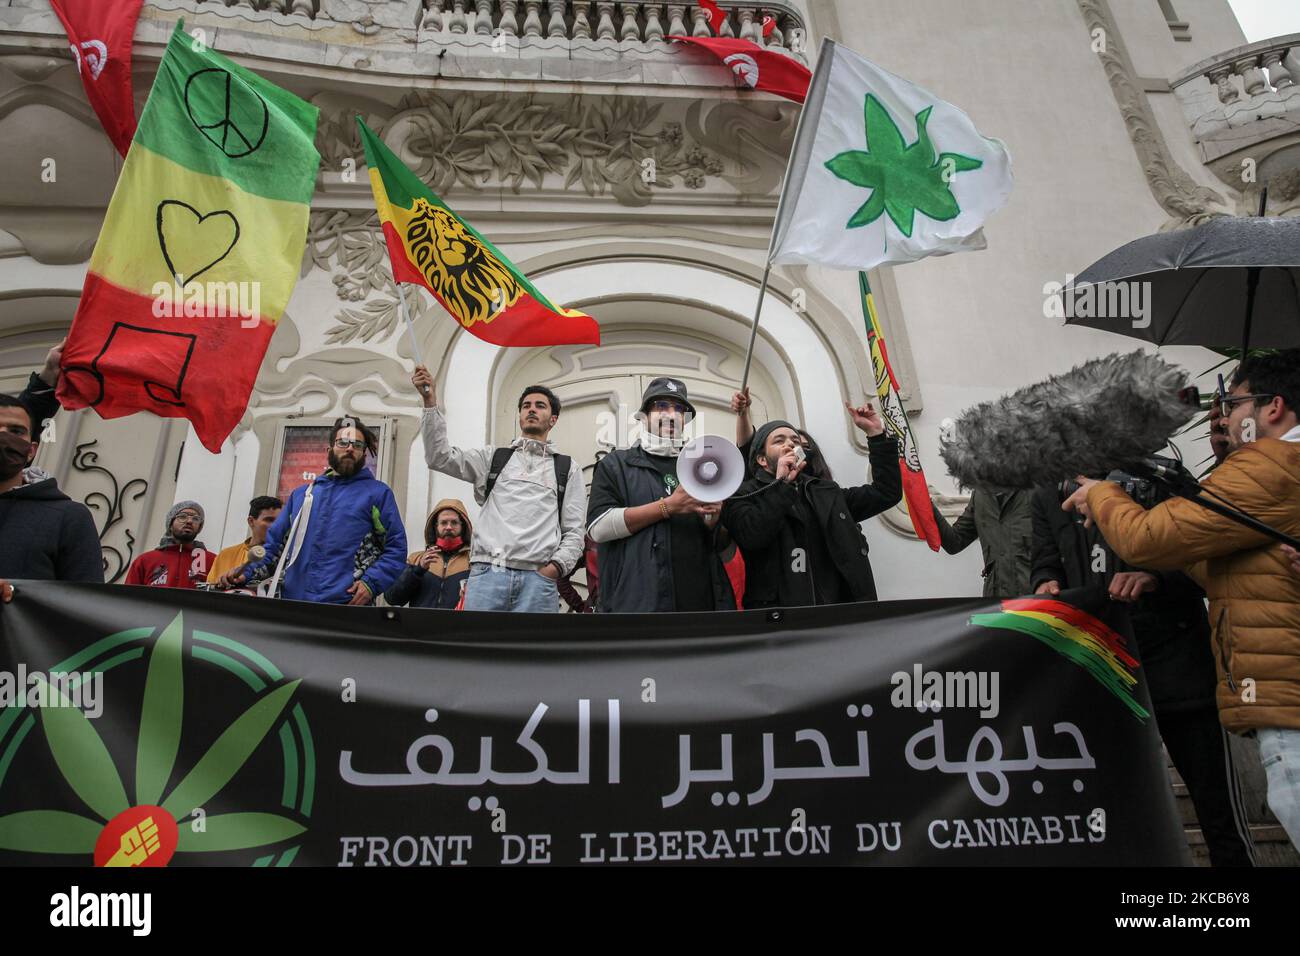 Les manifestants branle des drapeaux alors qu'ils tiennent une bannière avec un dessin de feuille de cannabis, Cela se lit en français et en arabe, le Front de libération du Kif, lors d'une manifestation organisée sur l'avenue Habib Bourguiba à Tunis, en Tunisie, sur 20 mars 2021, où les manifestants se sont rassemblés pour appeler à la décriminalisation et à la légalisation de l'usage du cannabis et à la libéralisation de sa commercialisation. Les jeunes manifestants ont également demandé la suspension de l'application de la loi 52 sur les stupéfiants, considérée comme répressive, et ont demandé pardon à tous ceux qui sont détenus pour usage de drogues. (Photo de Chehly Ben Ibrahim/Nur Banque D'Images